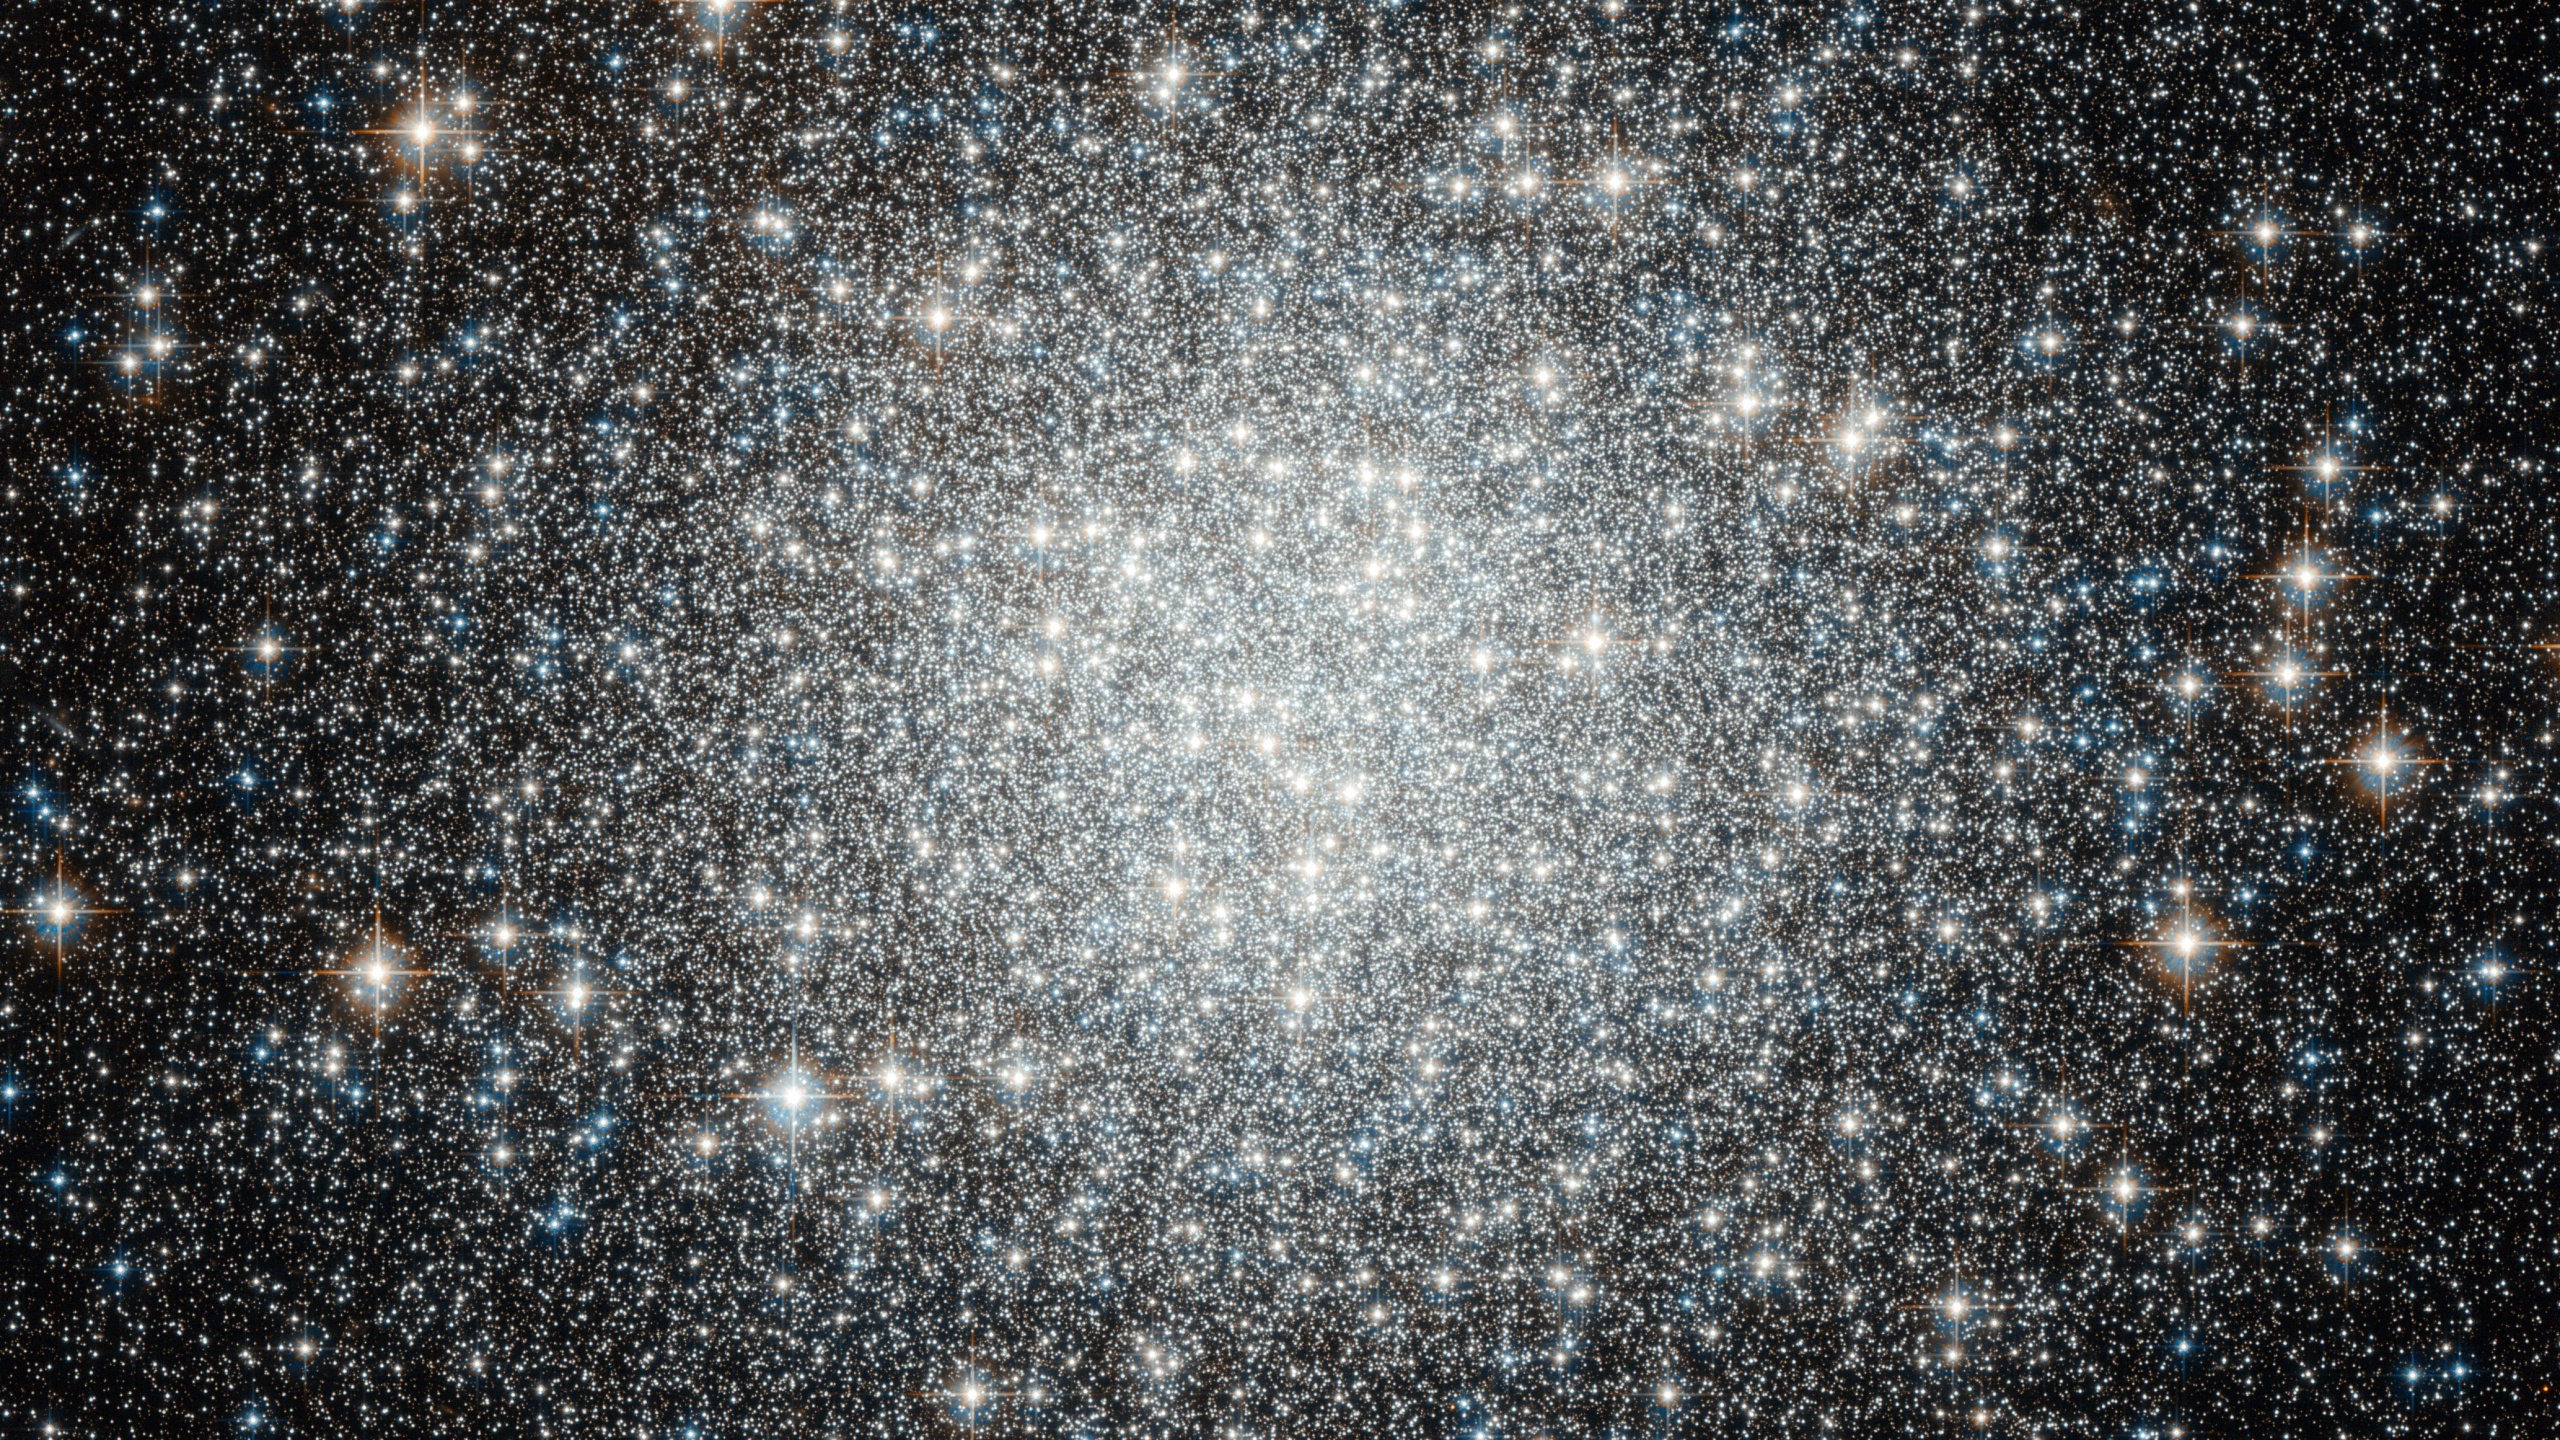 球状星团, 星团, 明星, 天文学, 银河系 壁纸 2560x1440 允许